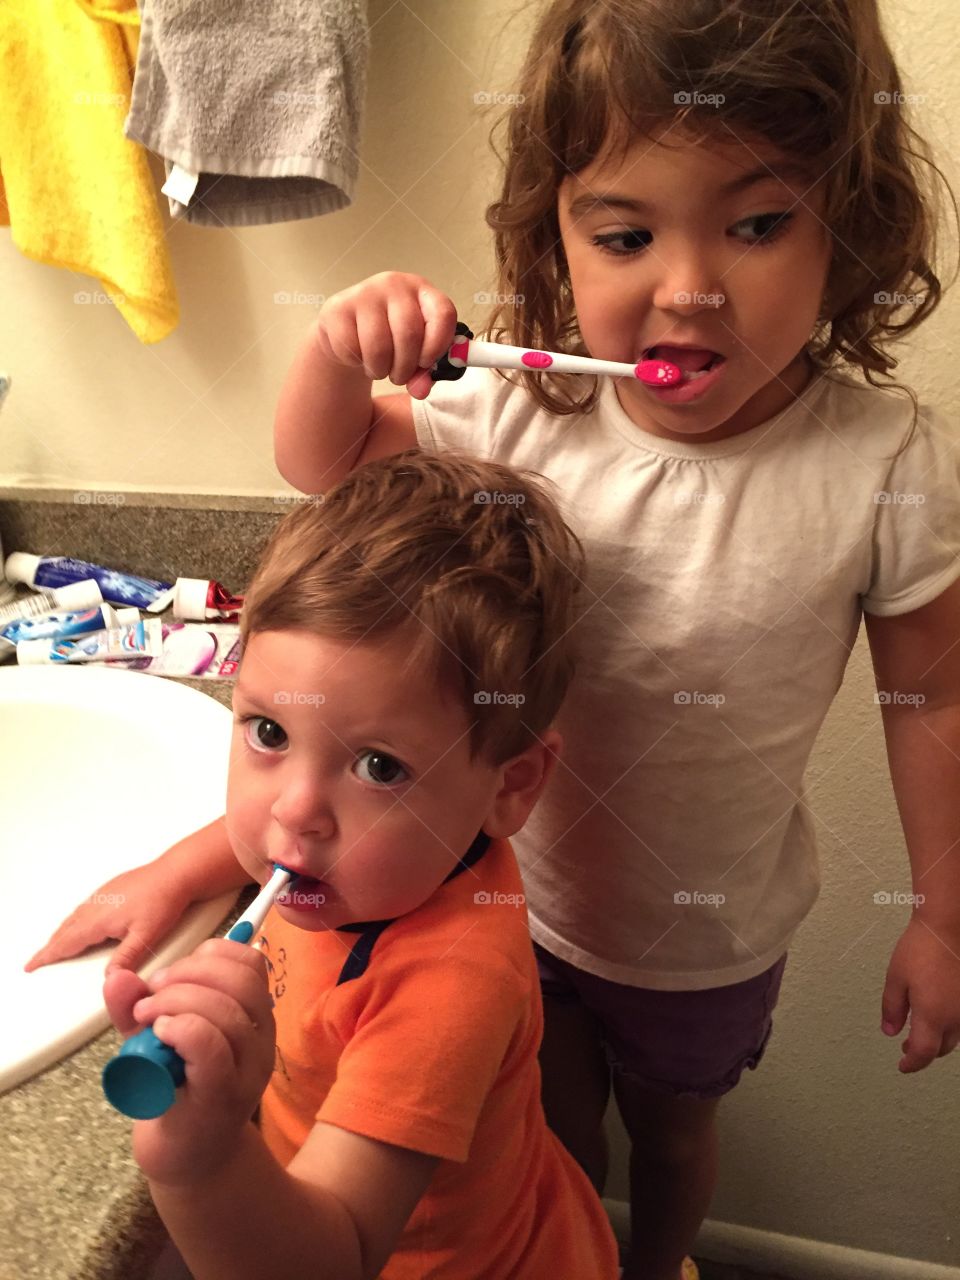 Brushing teeth 